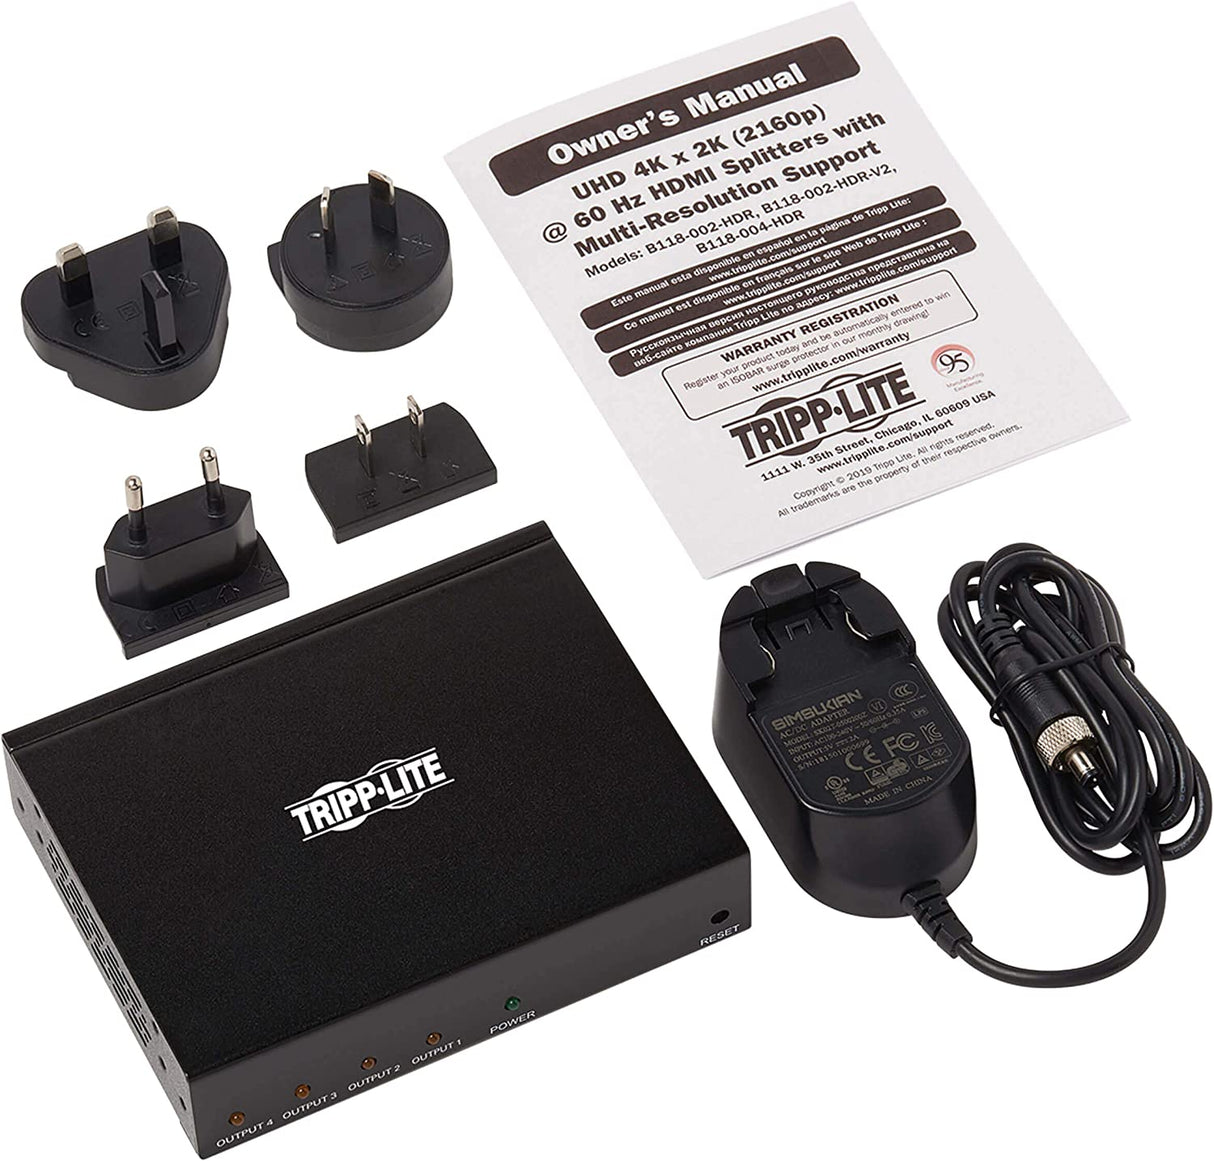 Tripp Lite HDMI Splitter, 1 in 4 Out Splitter, 4 Port HDMI Splitter, 4K @ 60 Hz, 4:4:4, Multi-Resolution Support, HDR, HDCP 2.2, TAA (B118-004-HDR), 15 Feet